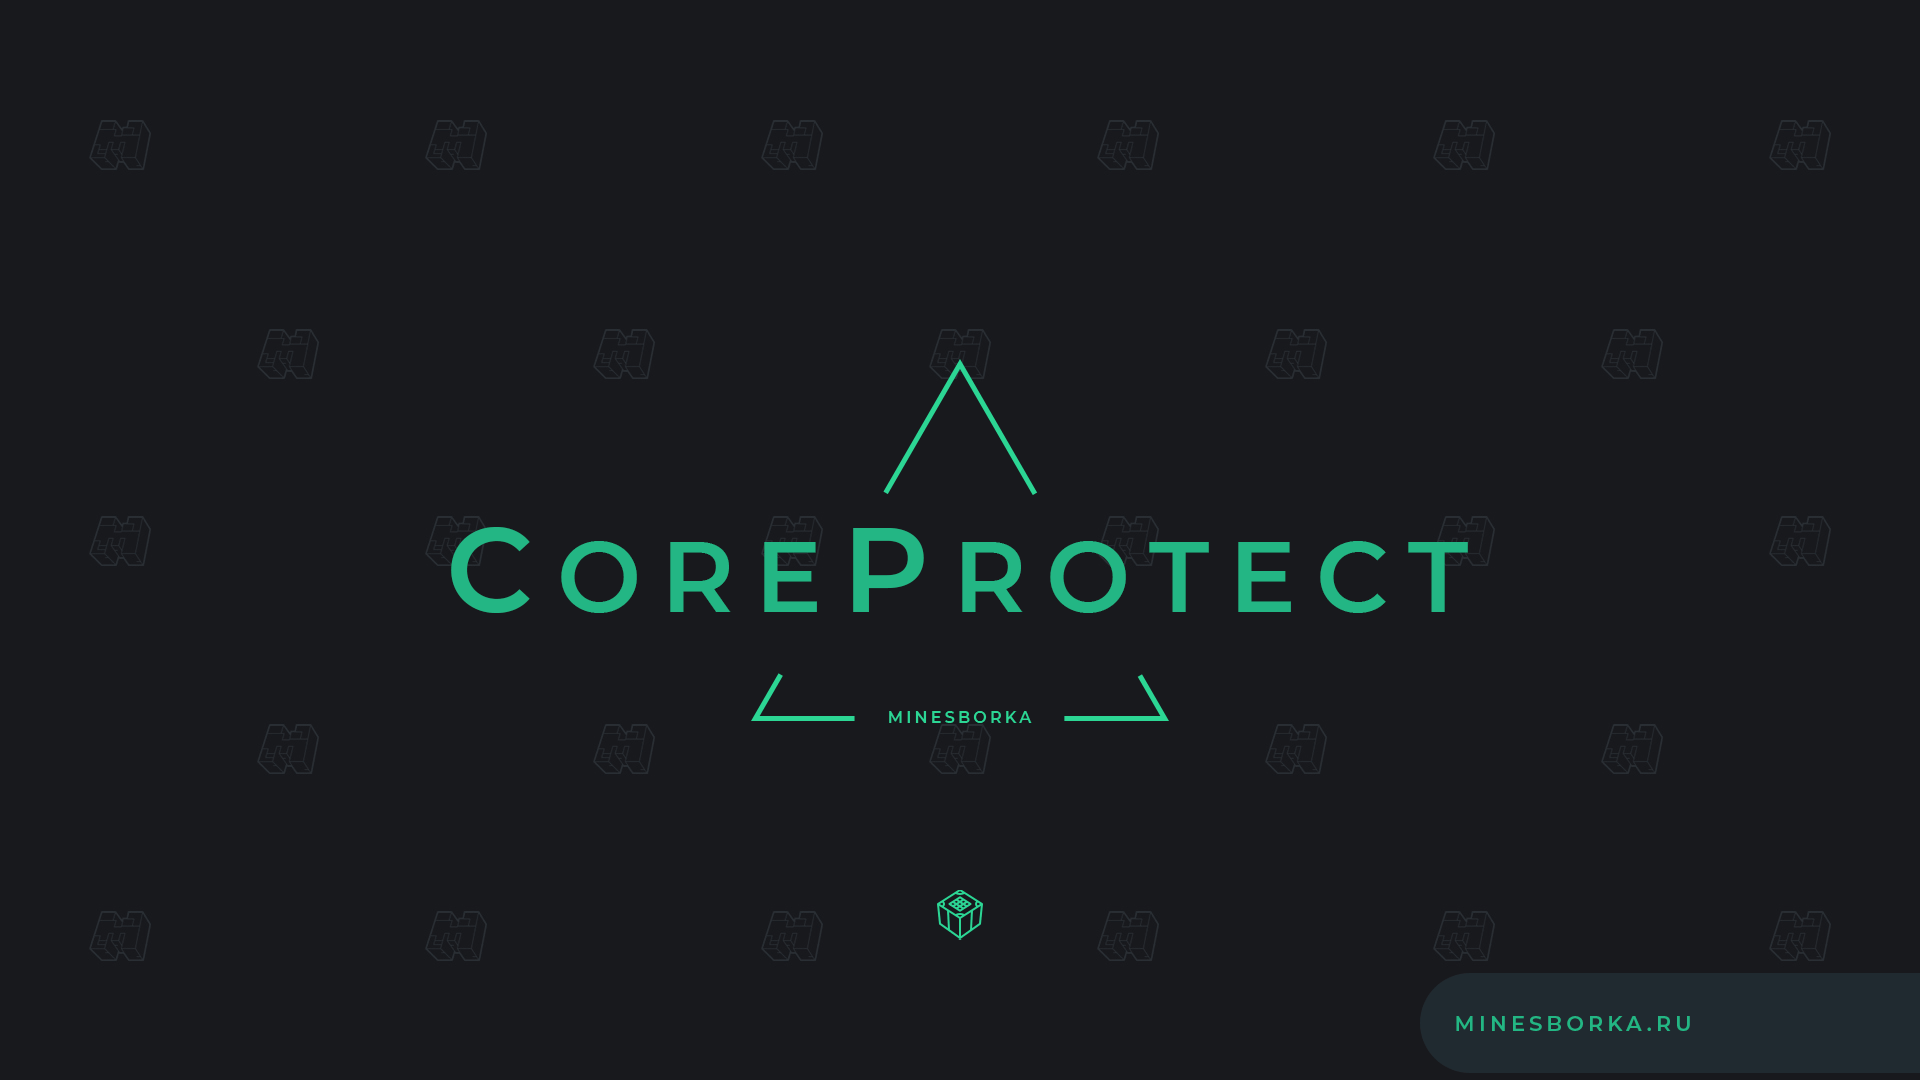 Скачать плагин CoreProtect | Просмотр кто ставил или ломал блоки на сервере Майнкрафт 1.8-1.19